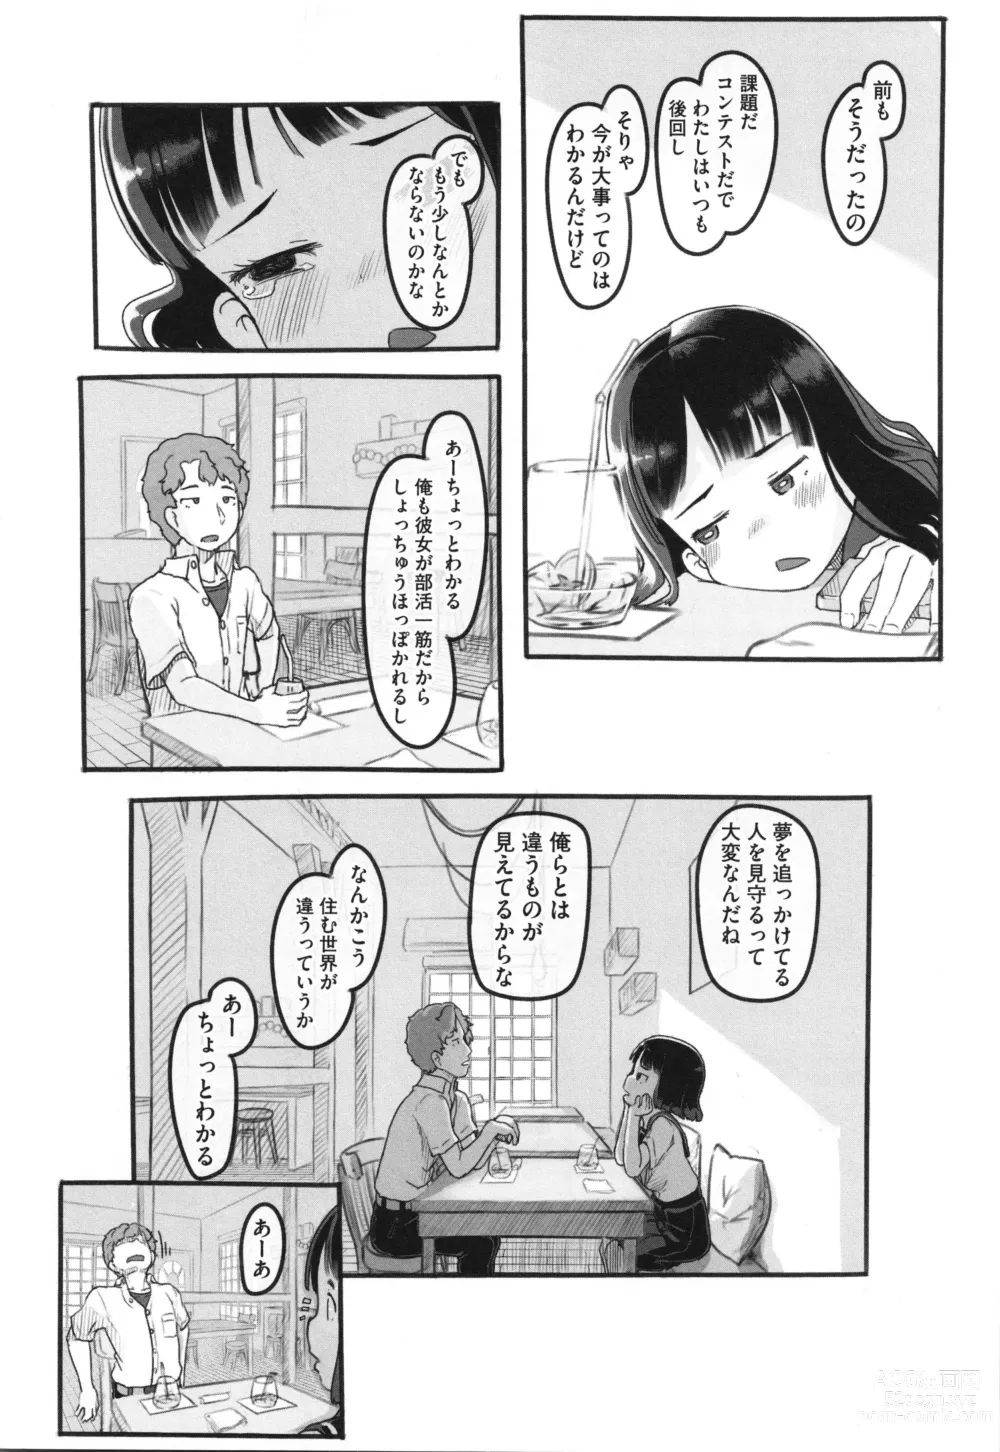 Page 21 of manga Kanojo wa Mada Kaette Inai